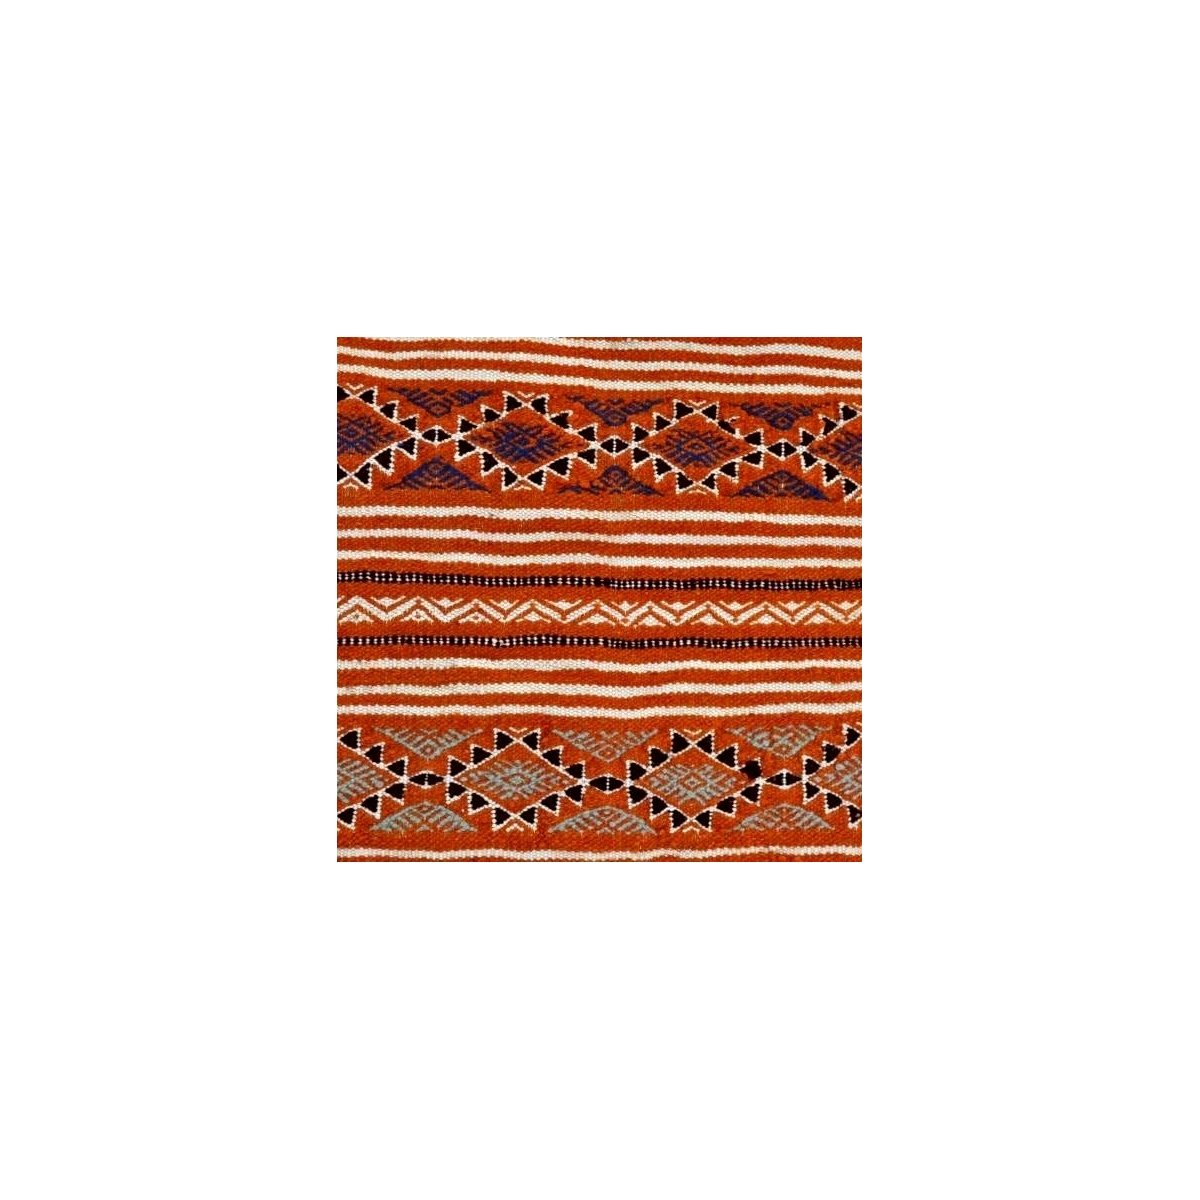 Berber Teppich Teppich Kelim Rached 110x195 Orange/Schwarz (Handgewebt, Wolle, Tunesien) Tunesischer Kelim-Teppich im marokkanis